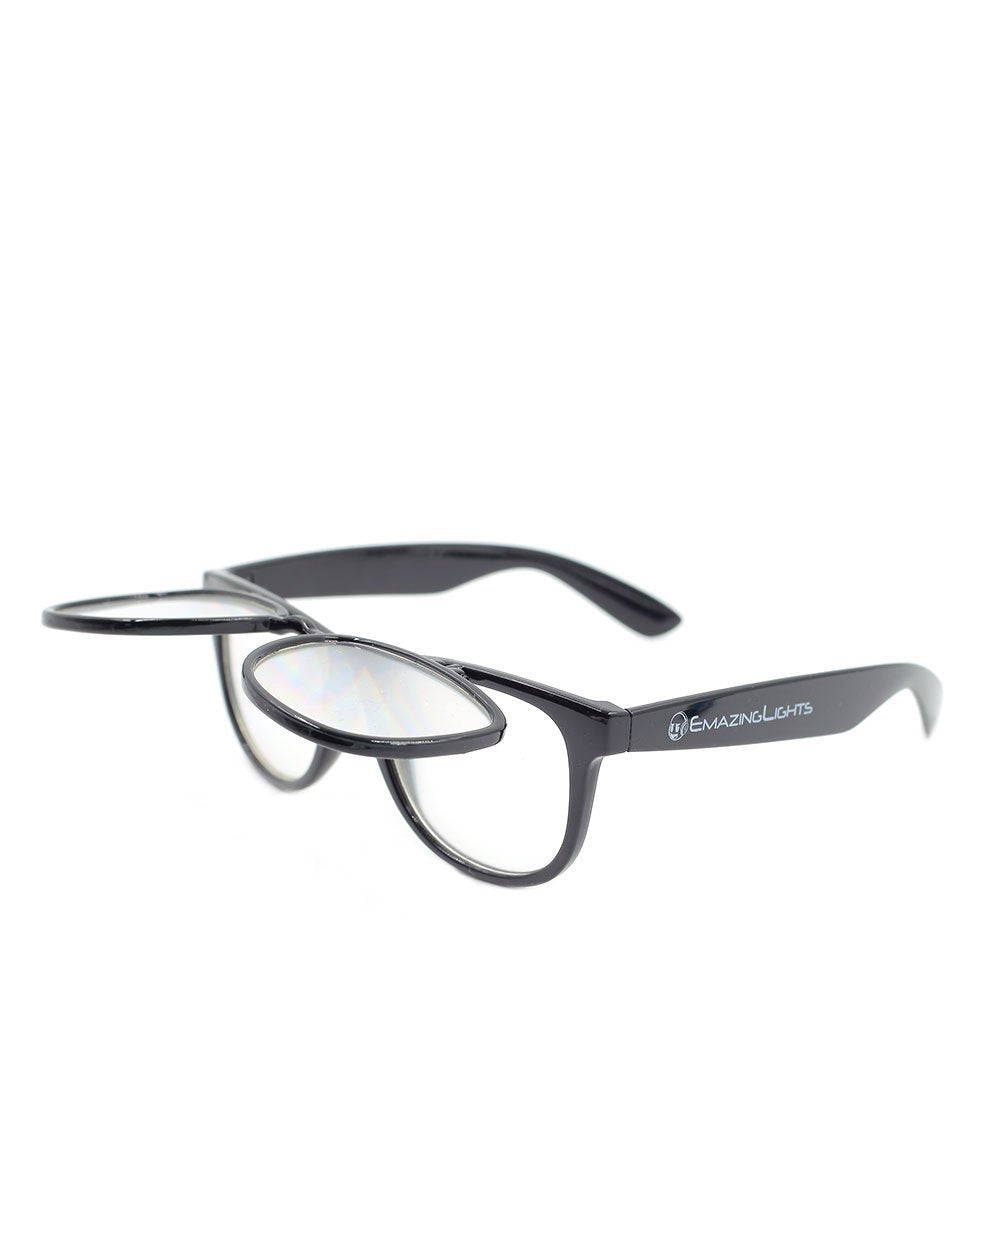 Solid Flip Up Diffraction Glasses - Black